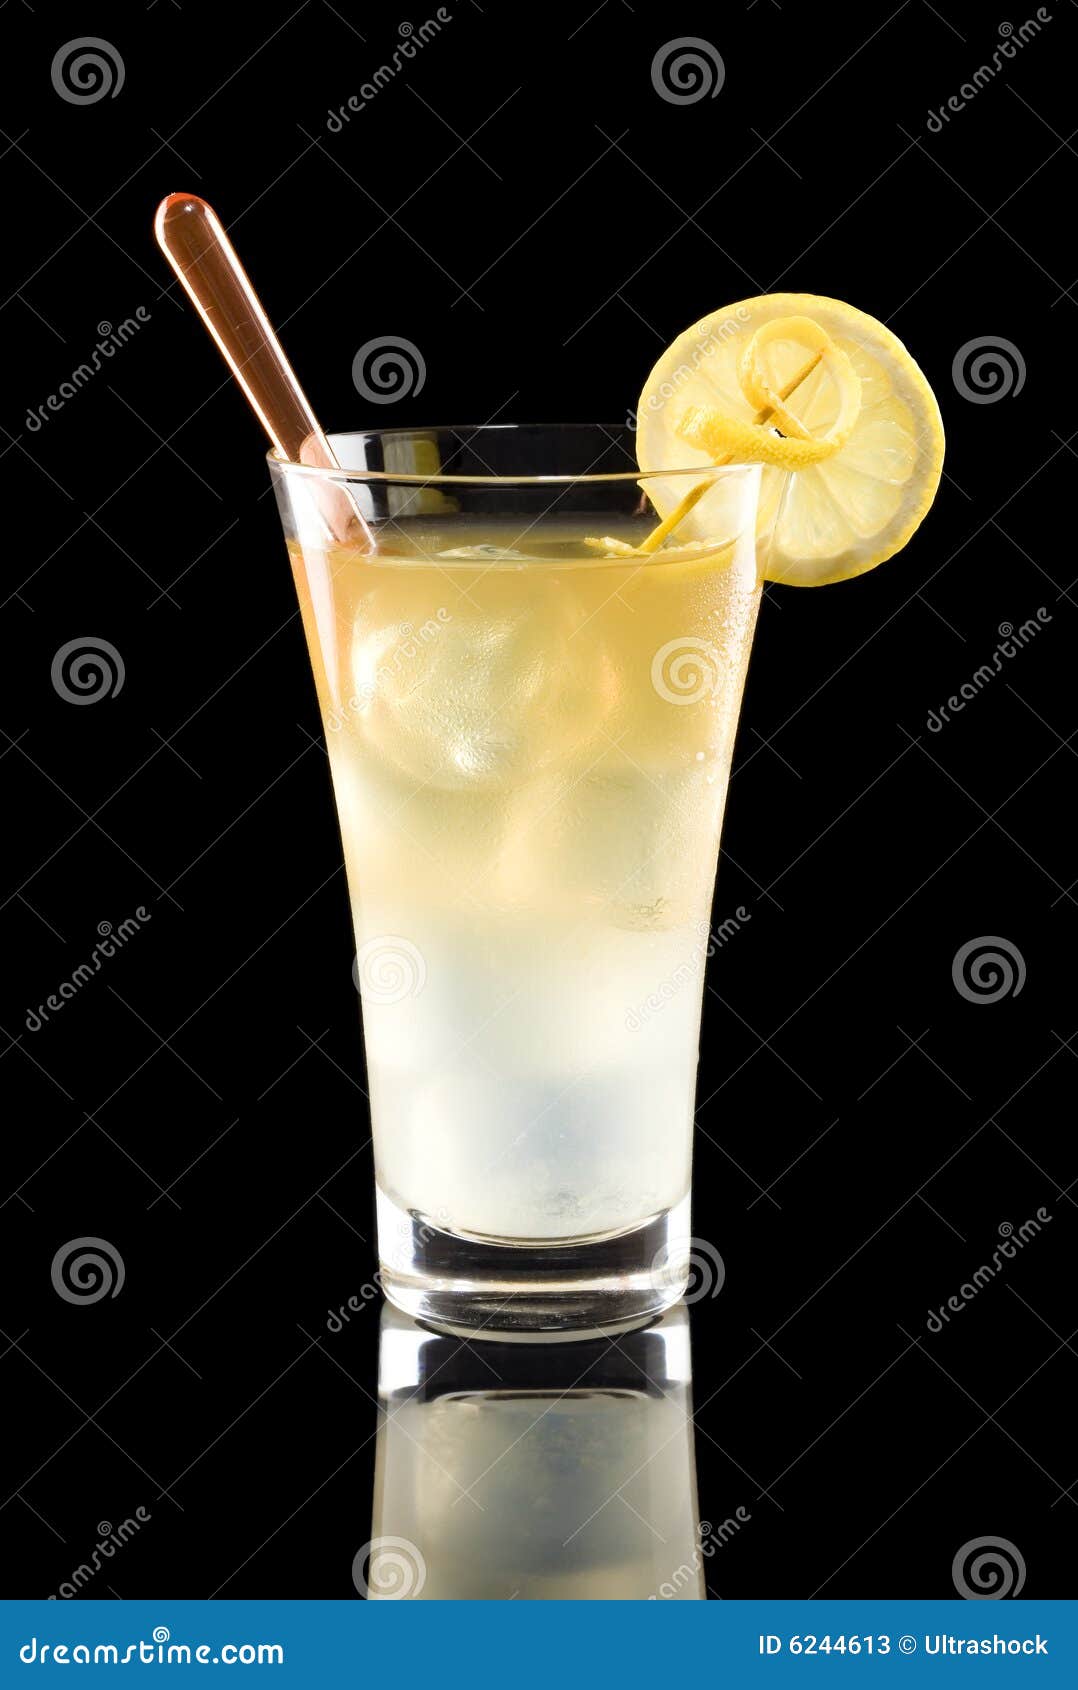 arnold palmer drink